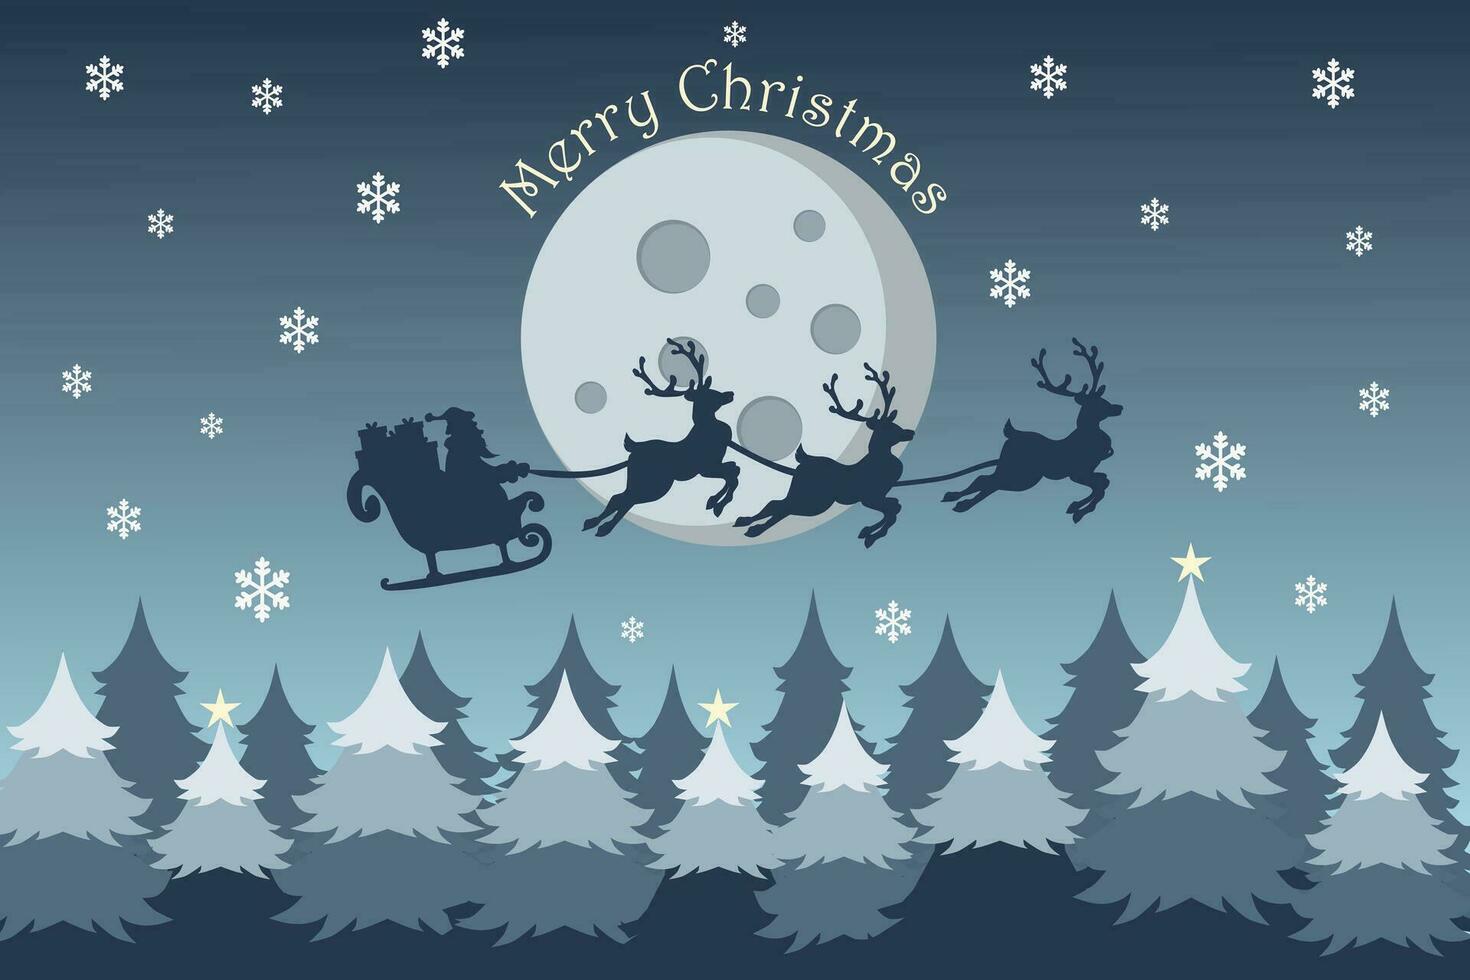 vrolijk Kerstmis achtergrond met de kerstman claus vliegend Aan de lucht in slee met rendier Bij nacht met vol maan, sneeuw, en Kerstmis bomen. vector illustratie.